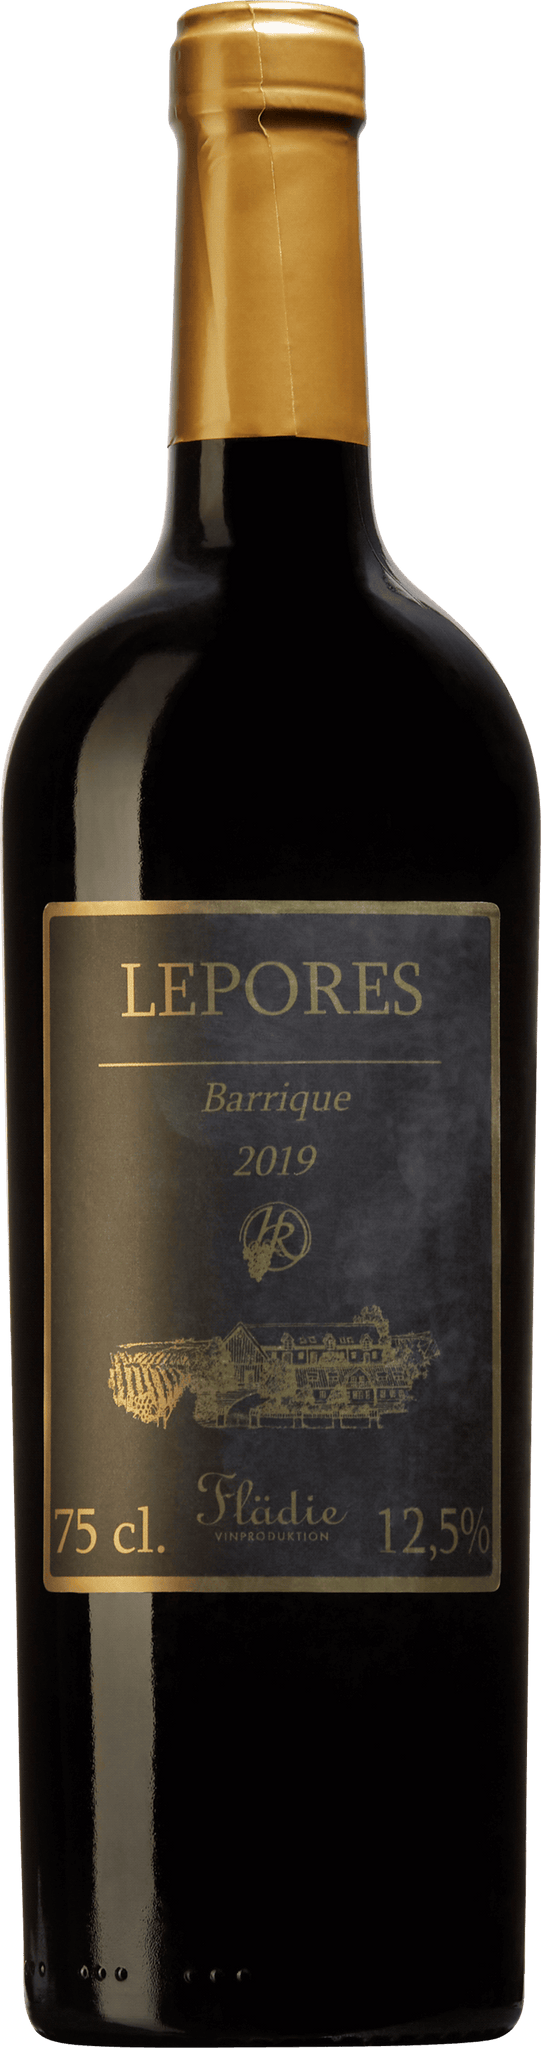 Lepores Barrique 2019